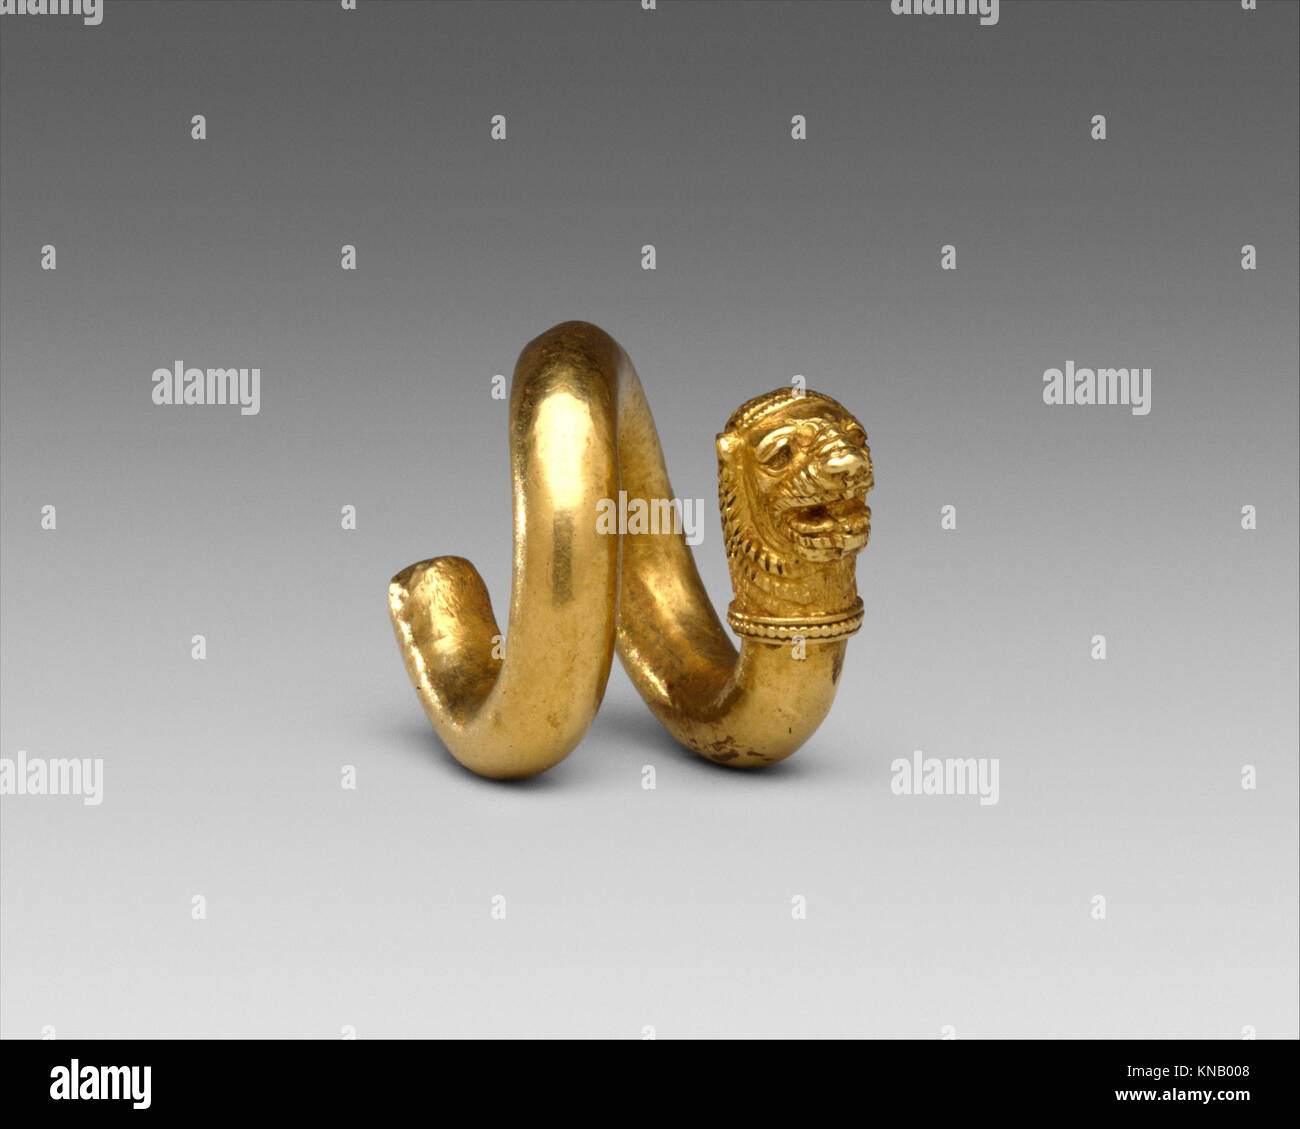 Spirale d'or et d'alliages de cuivre avec lion-head terminal rencontré DT328183 242800 Banque D'Images